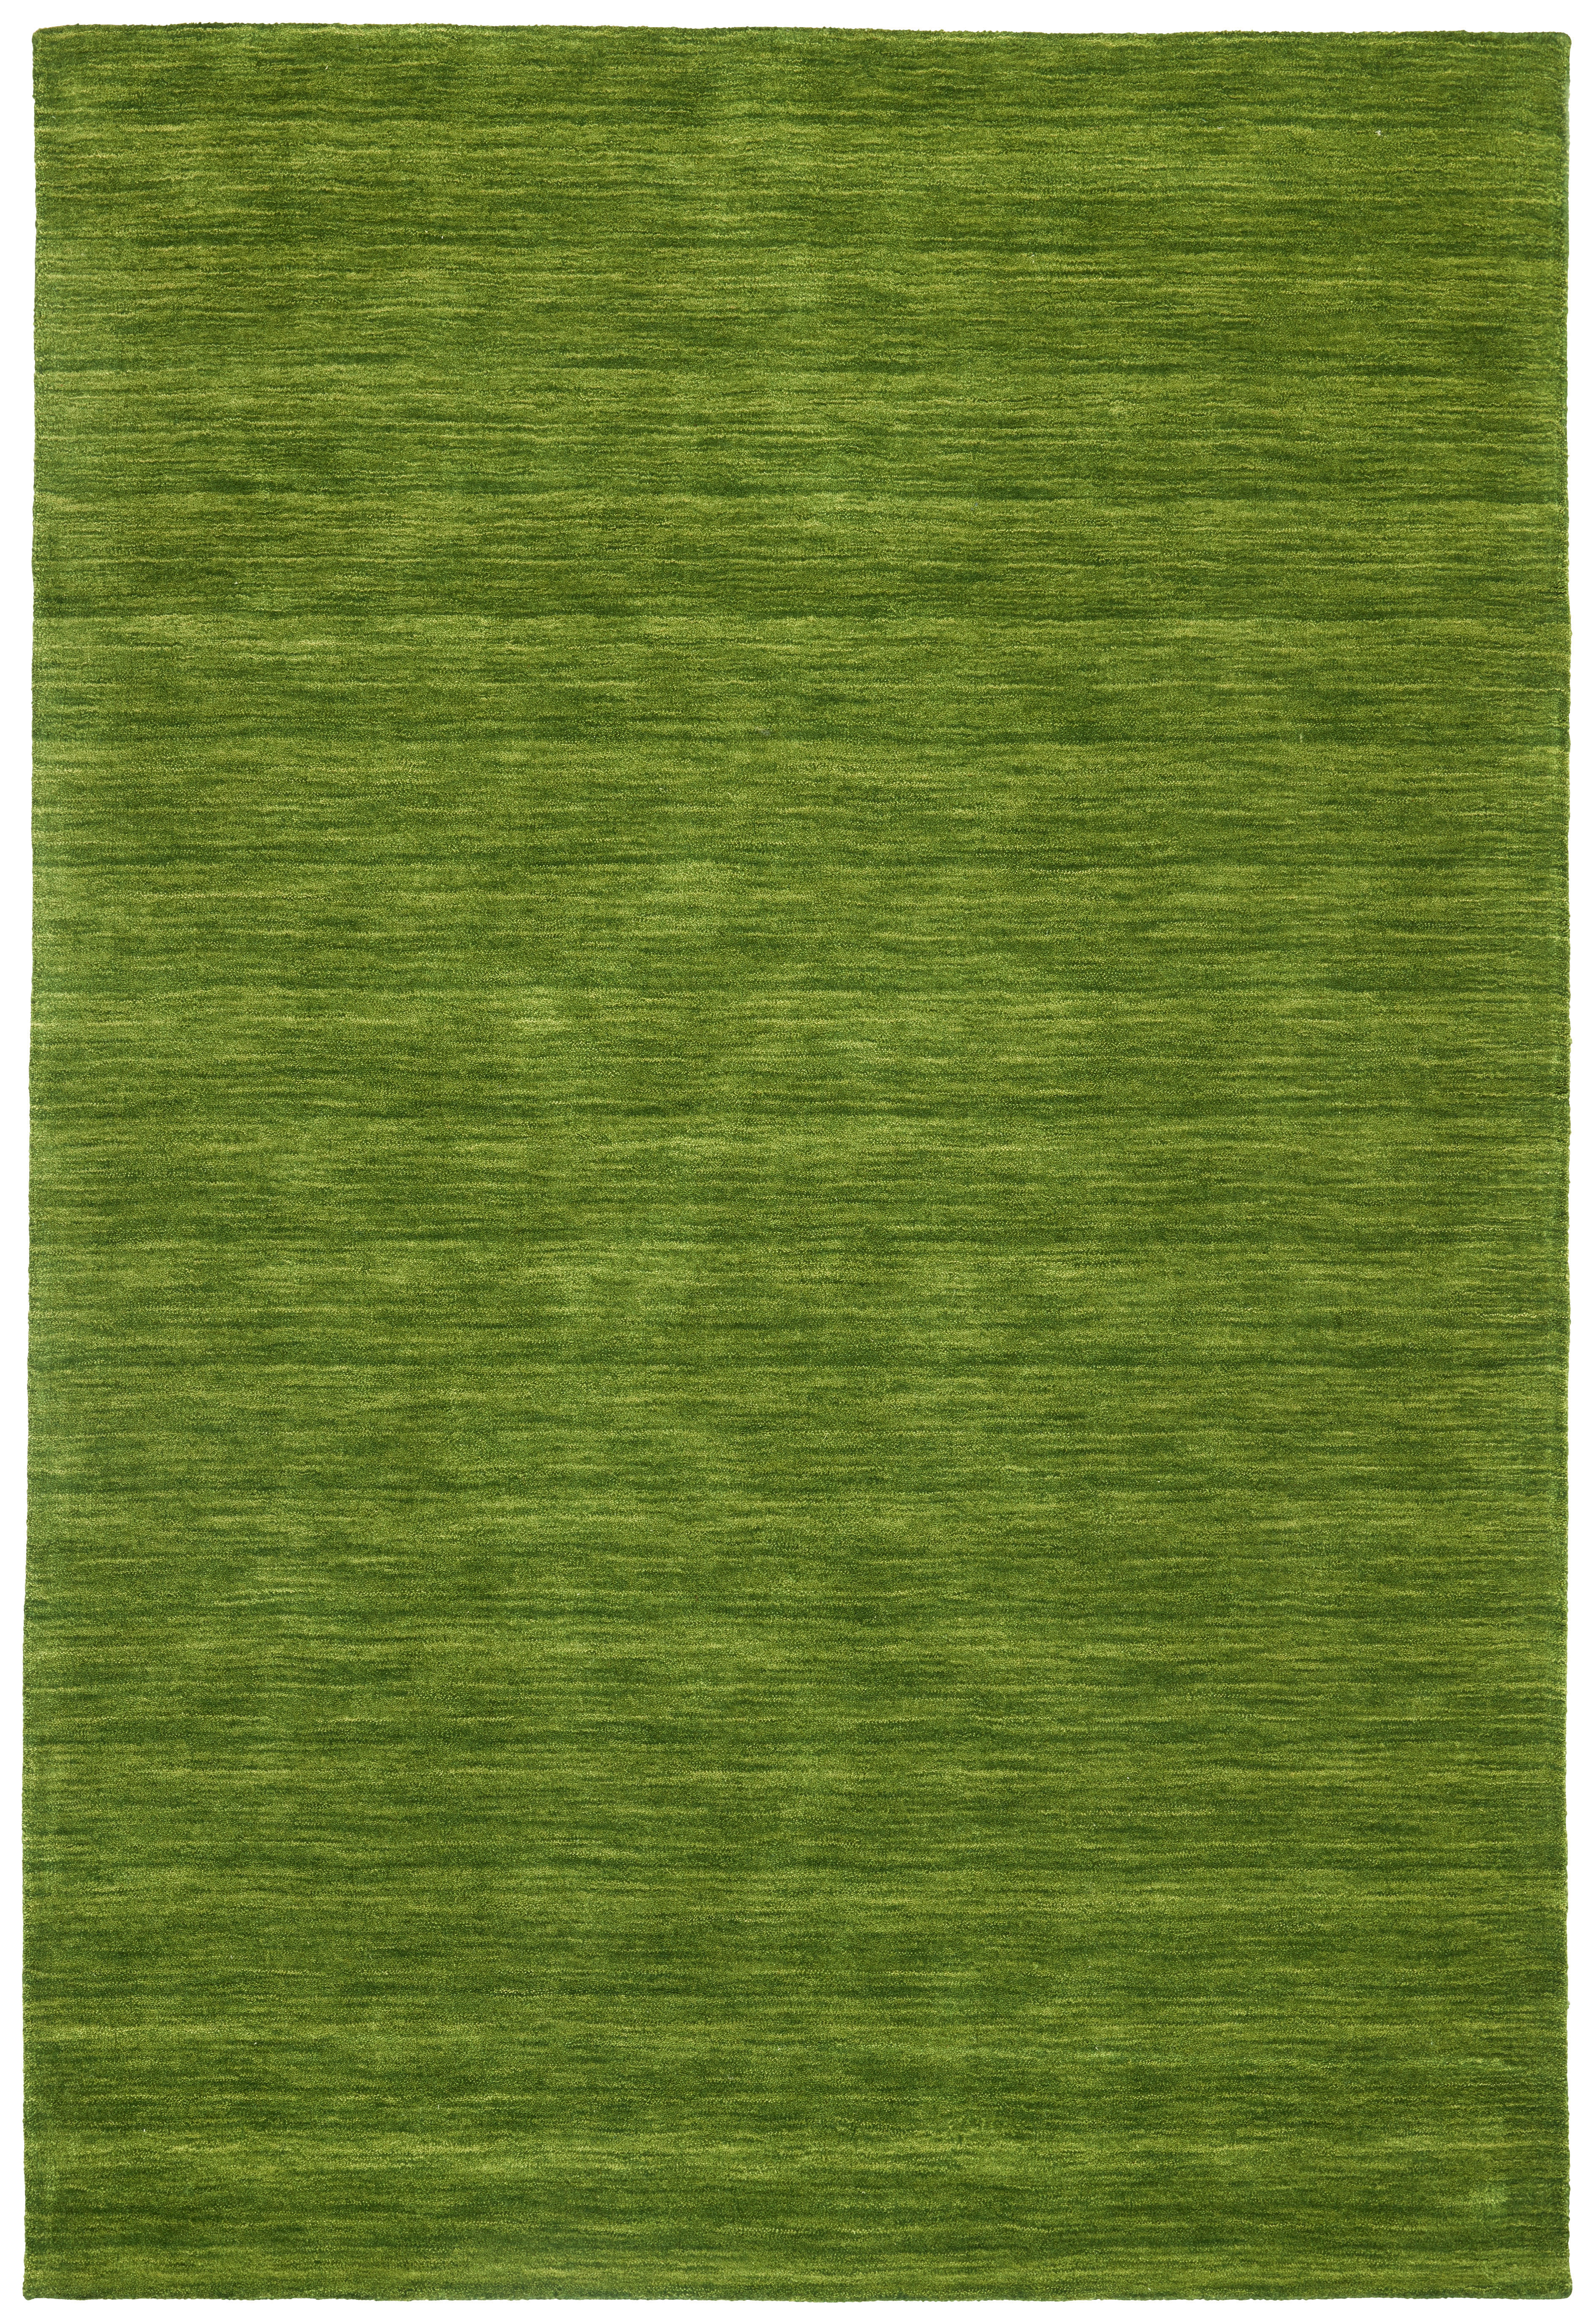 Cazaris ORIENTÁLNÍ KOBEREC, 80/200 cm, zelená - zelená